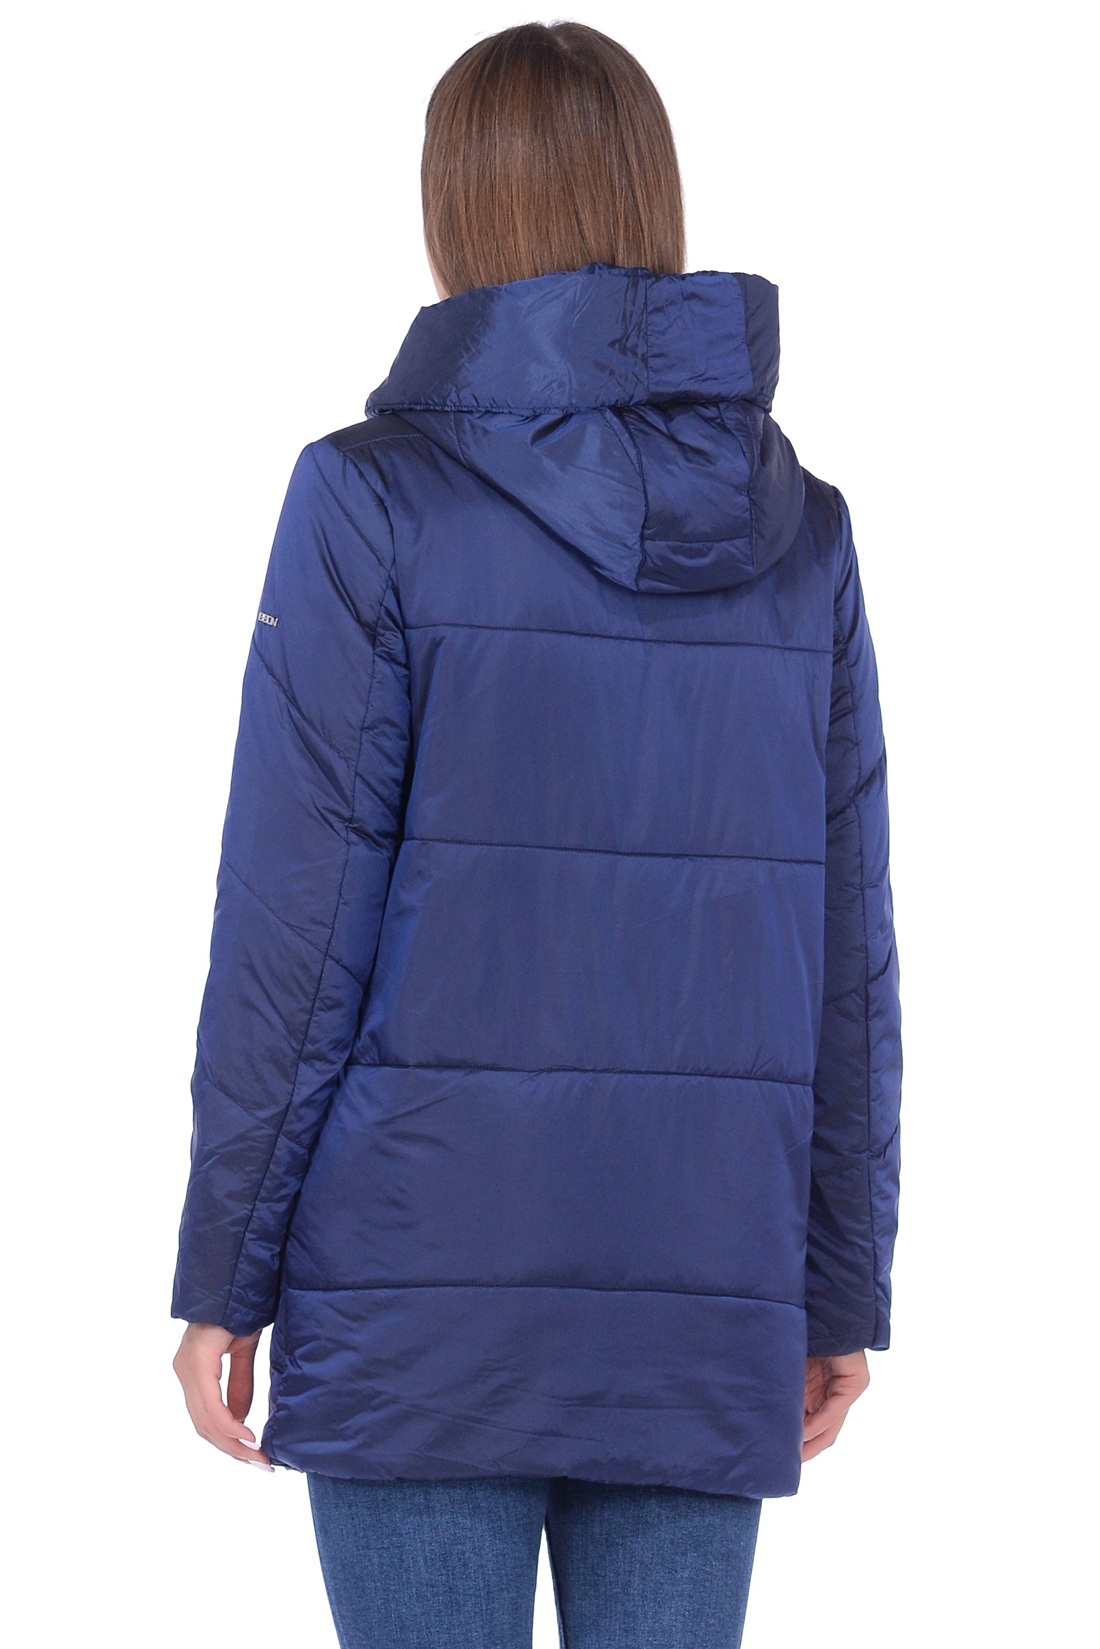 Куртка с капюшоном и асимметричной застёжкой (арт. baon B038524), размер L, цвет синий Куртка с капюшоном и асимметричной застёжкой (арт. baon B038524) - фото 2